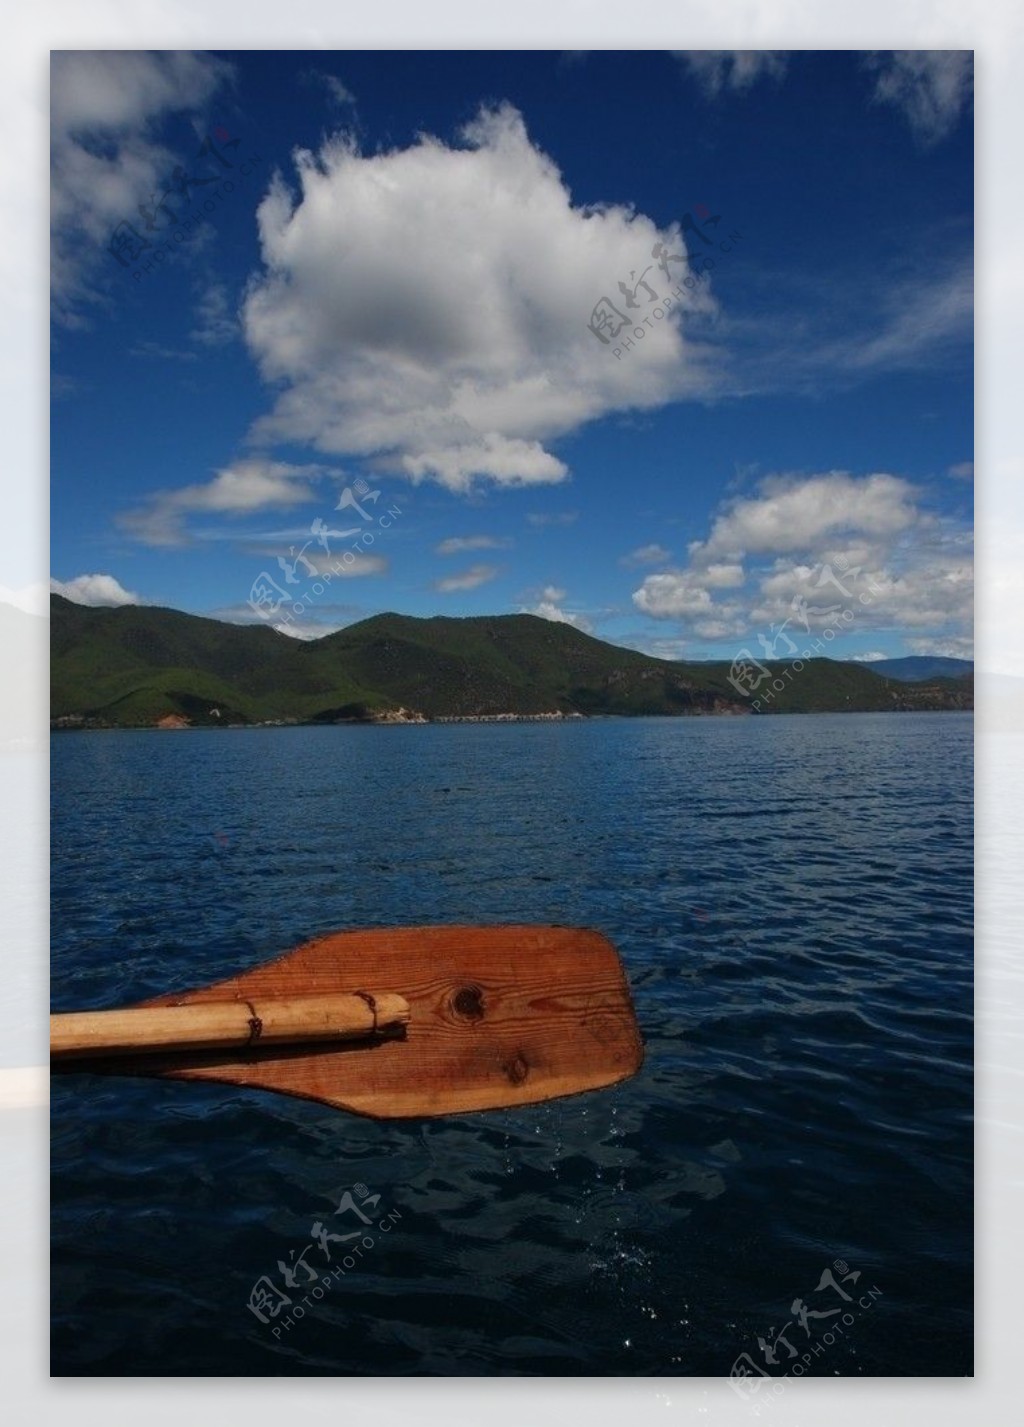 丽江泸沽湖蓝天白云湖面山水船桨划船图片